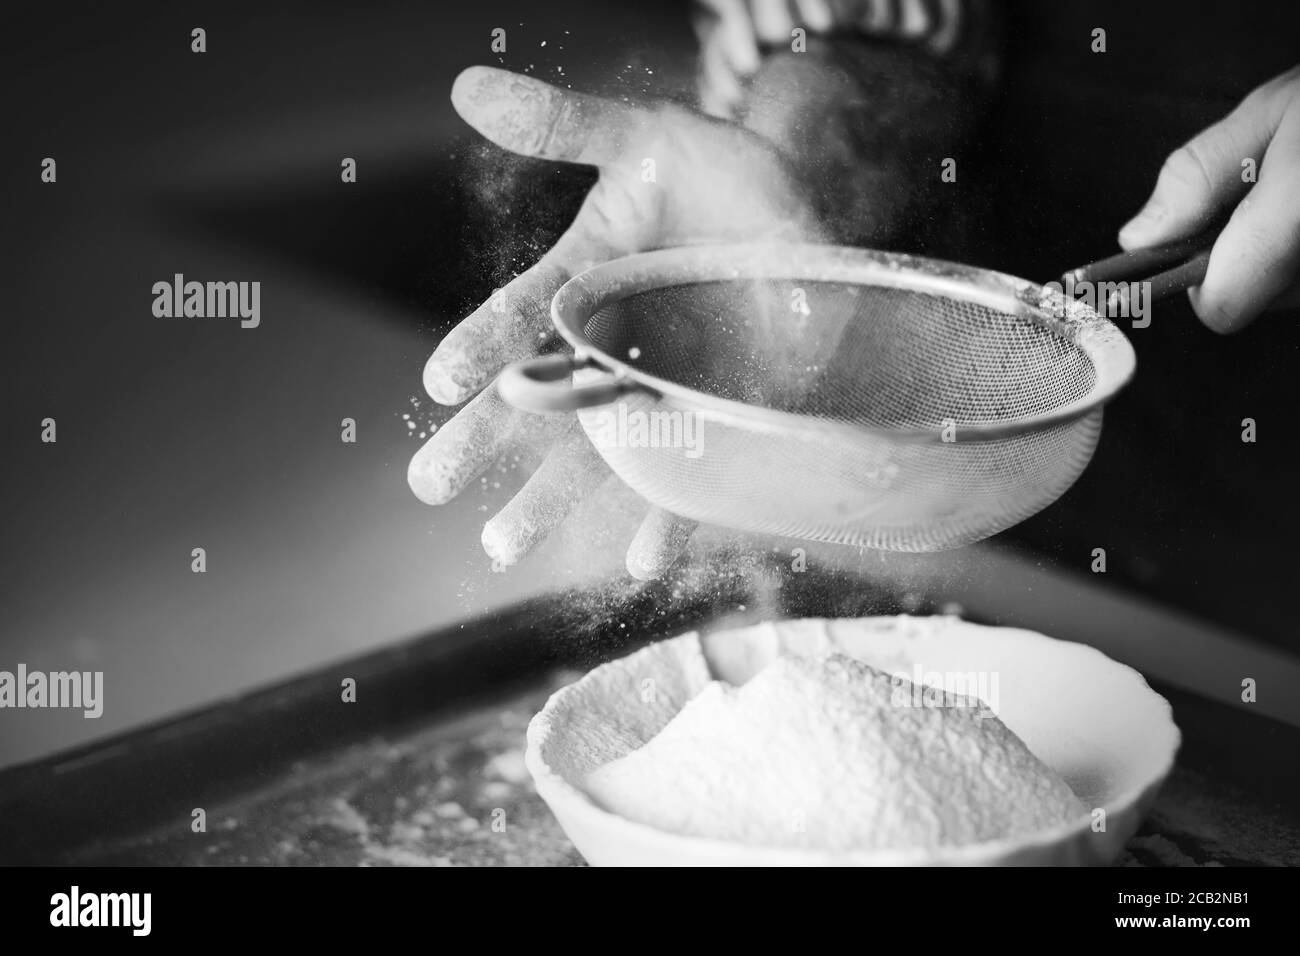 Image en noir et blanc d'un chef expérimenté utilisant sa main pour tamiser la farine dans un tamis dans un bol. Le processus de cuisson. Banque D'Images